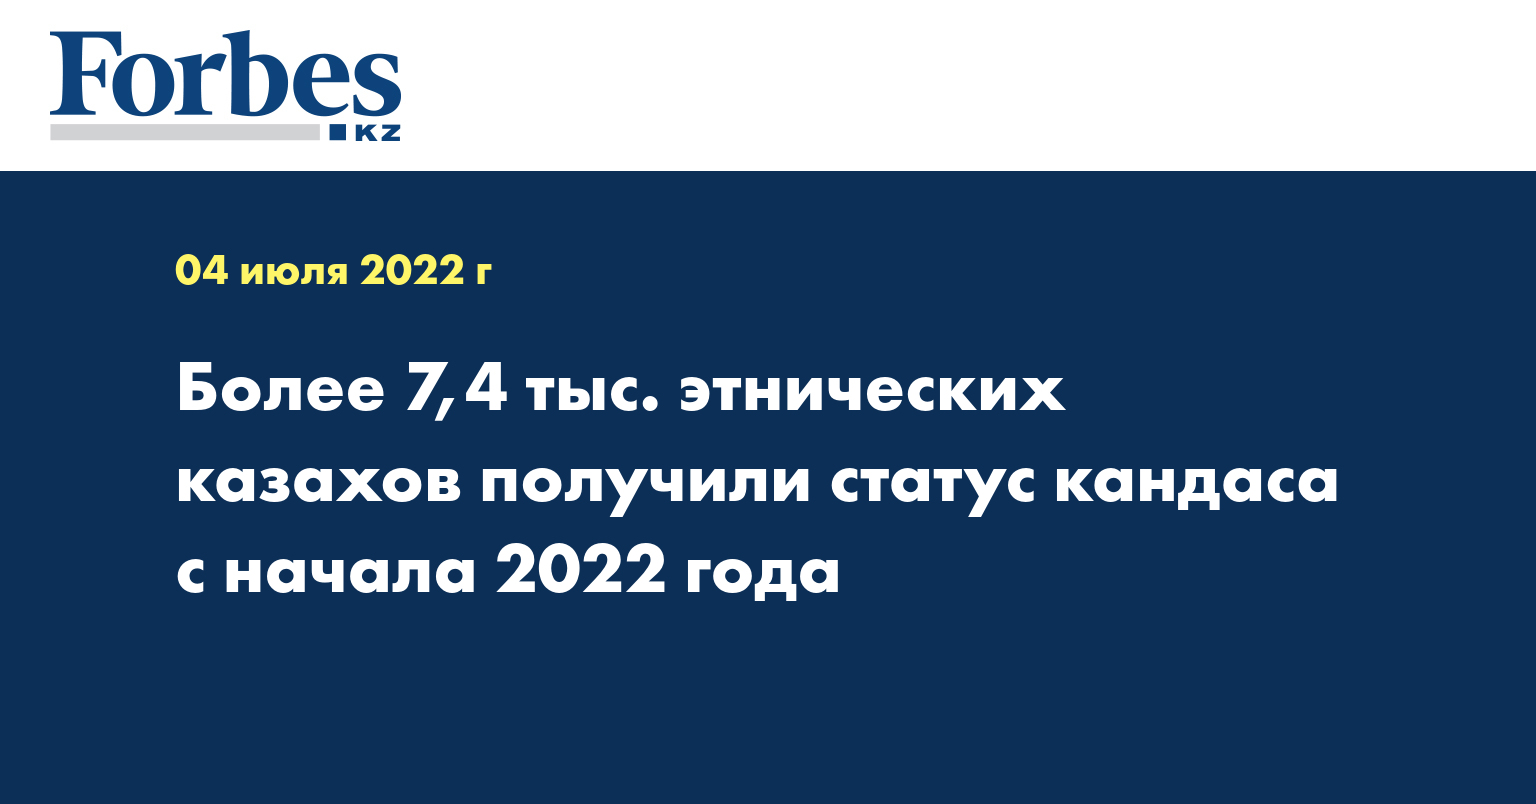 Более 7,4 тыс. этнических казахов получили статус кандаса с начала 2022 года